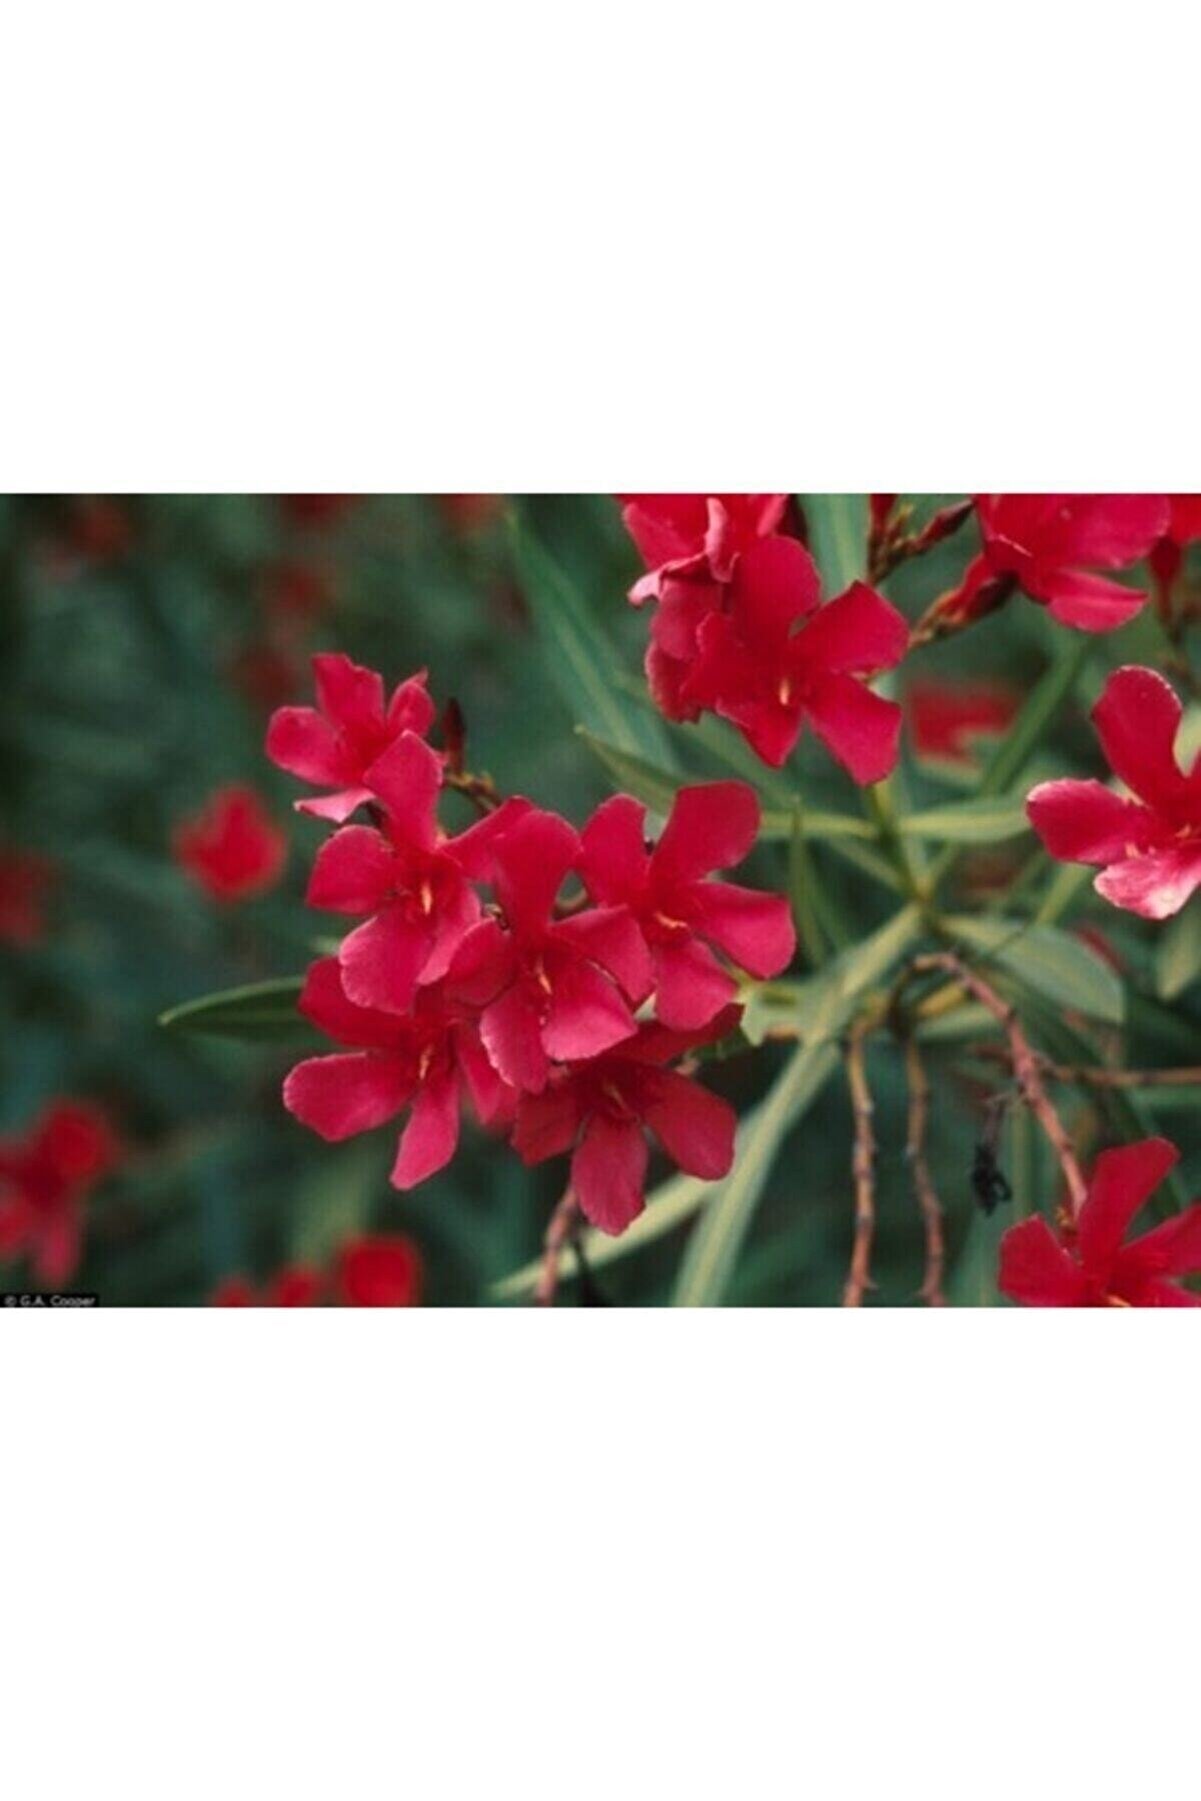 ADA TARIM 2 Adet Tüplü Kırmızı Zakkum Çiçegi Fidanı 2 Yaş (60-80cm)